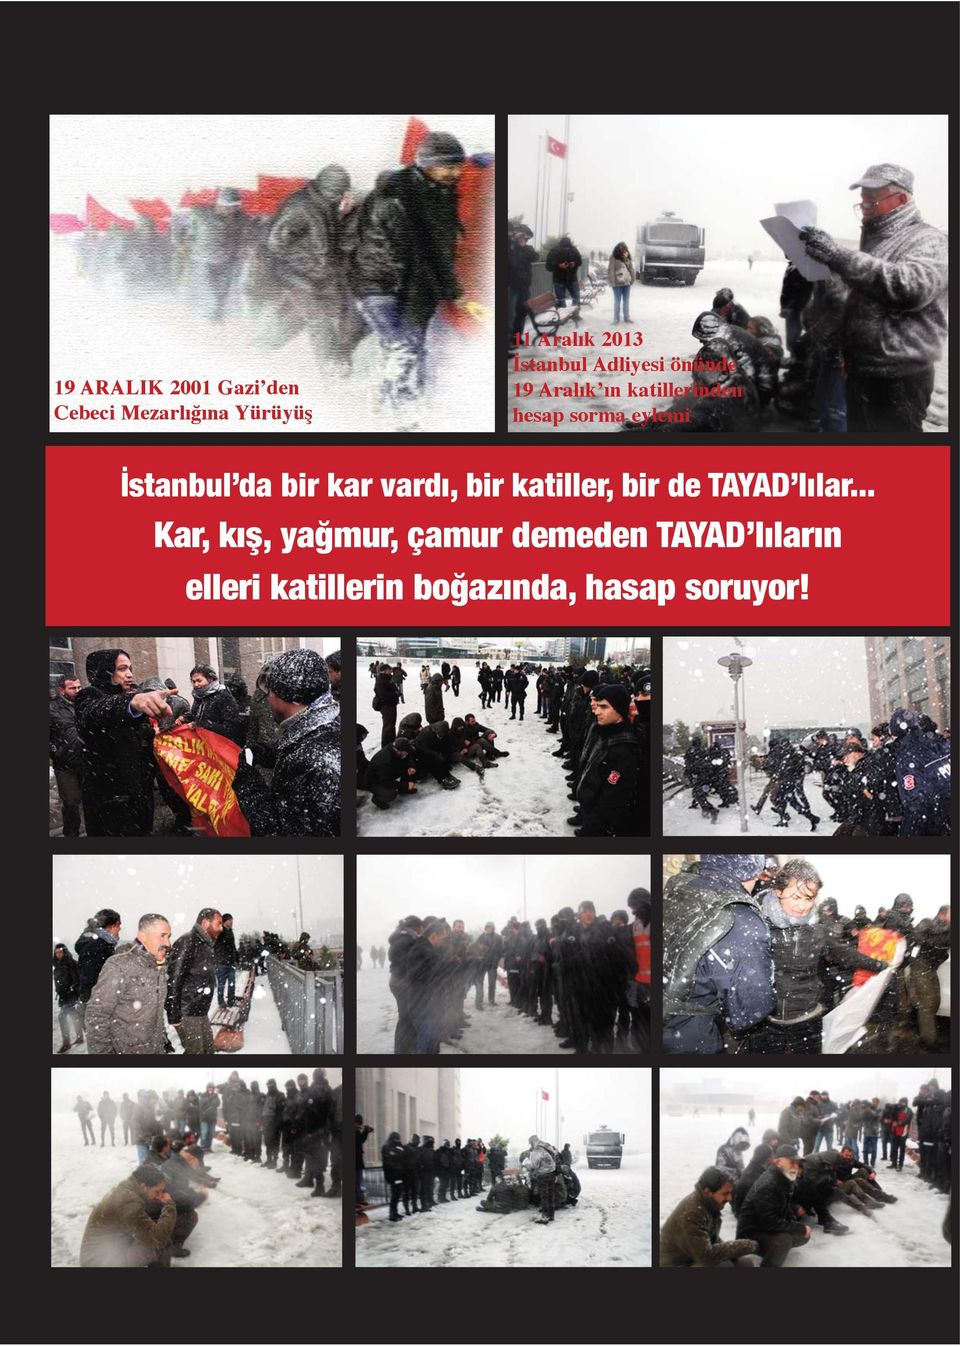 İstanbul da bir kar vardı, bir katiller, bir de TAYAD lılar.